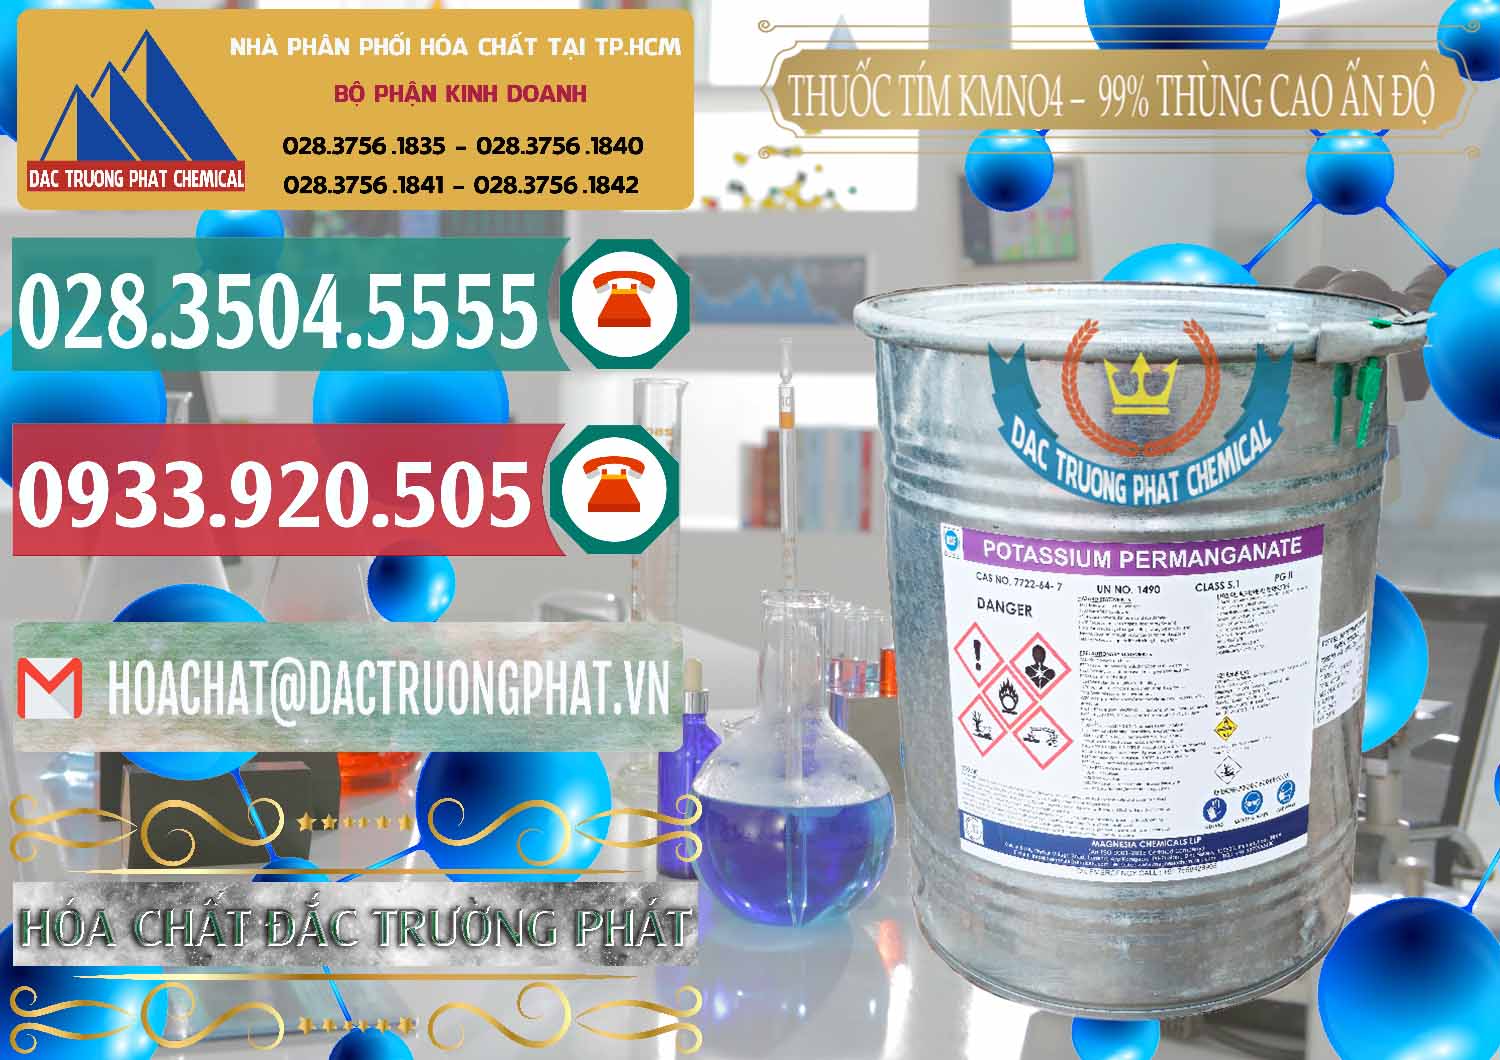 Nơi chuyên cung ứng ( bán ) Thuốc Tím - KMNO4 Thùng Cao 99% Magnesia Chemicals Ấn Độ India - 0164 - Chuyên bán _ cung cấp hóa chất tại TP.HCM - muabanhoachat.vn